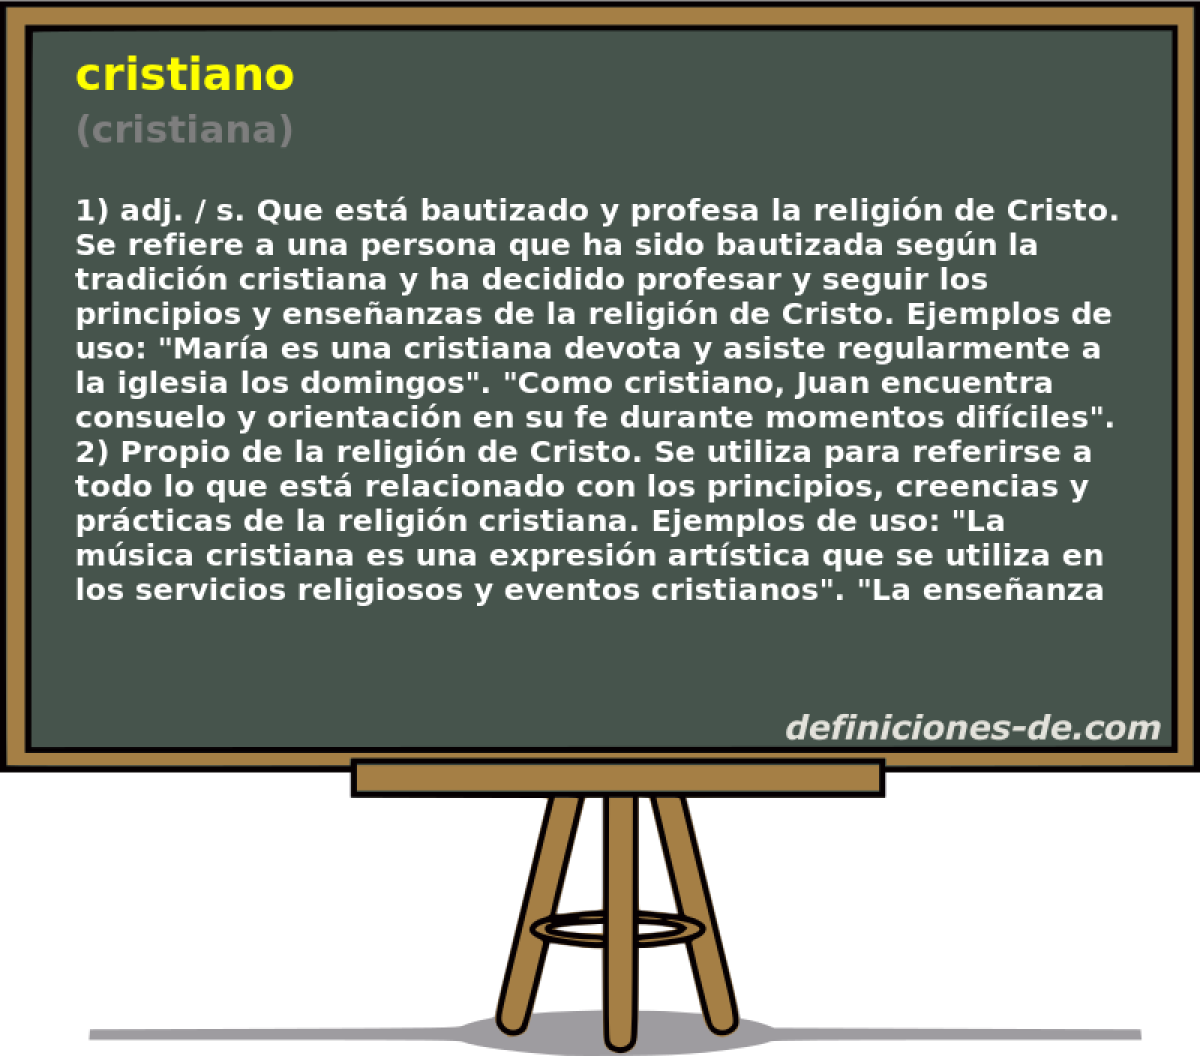 cristiano (cristiana)